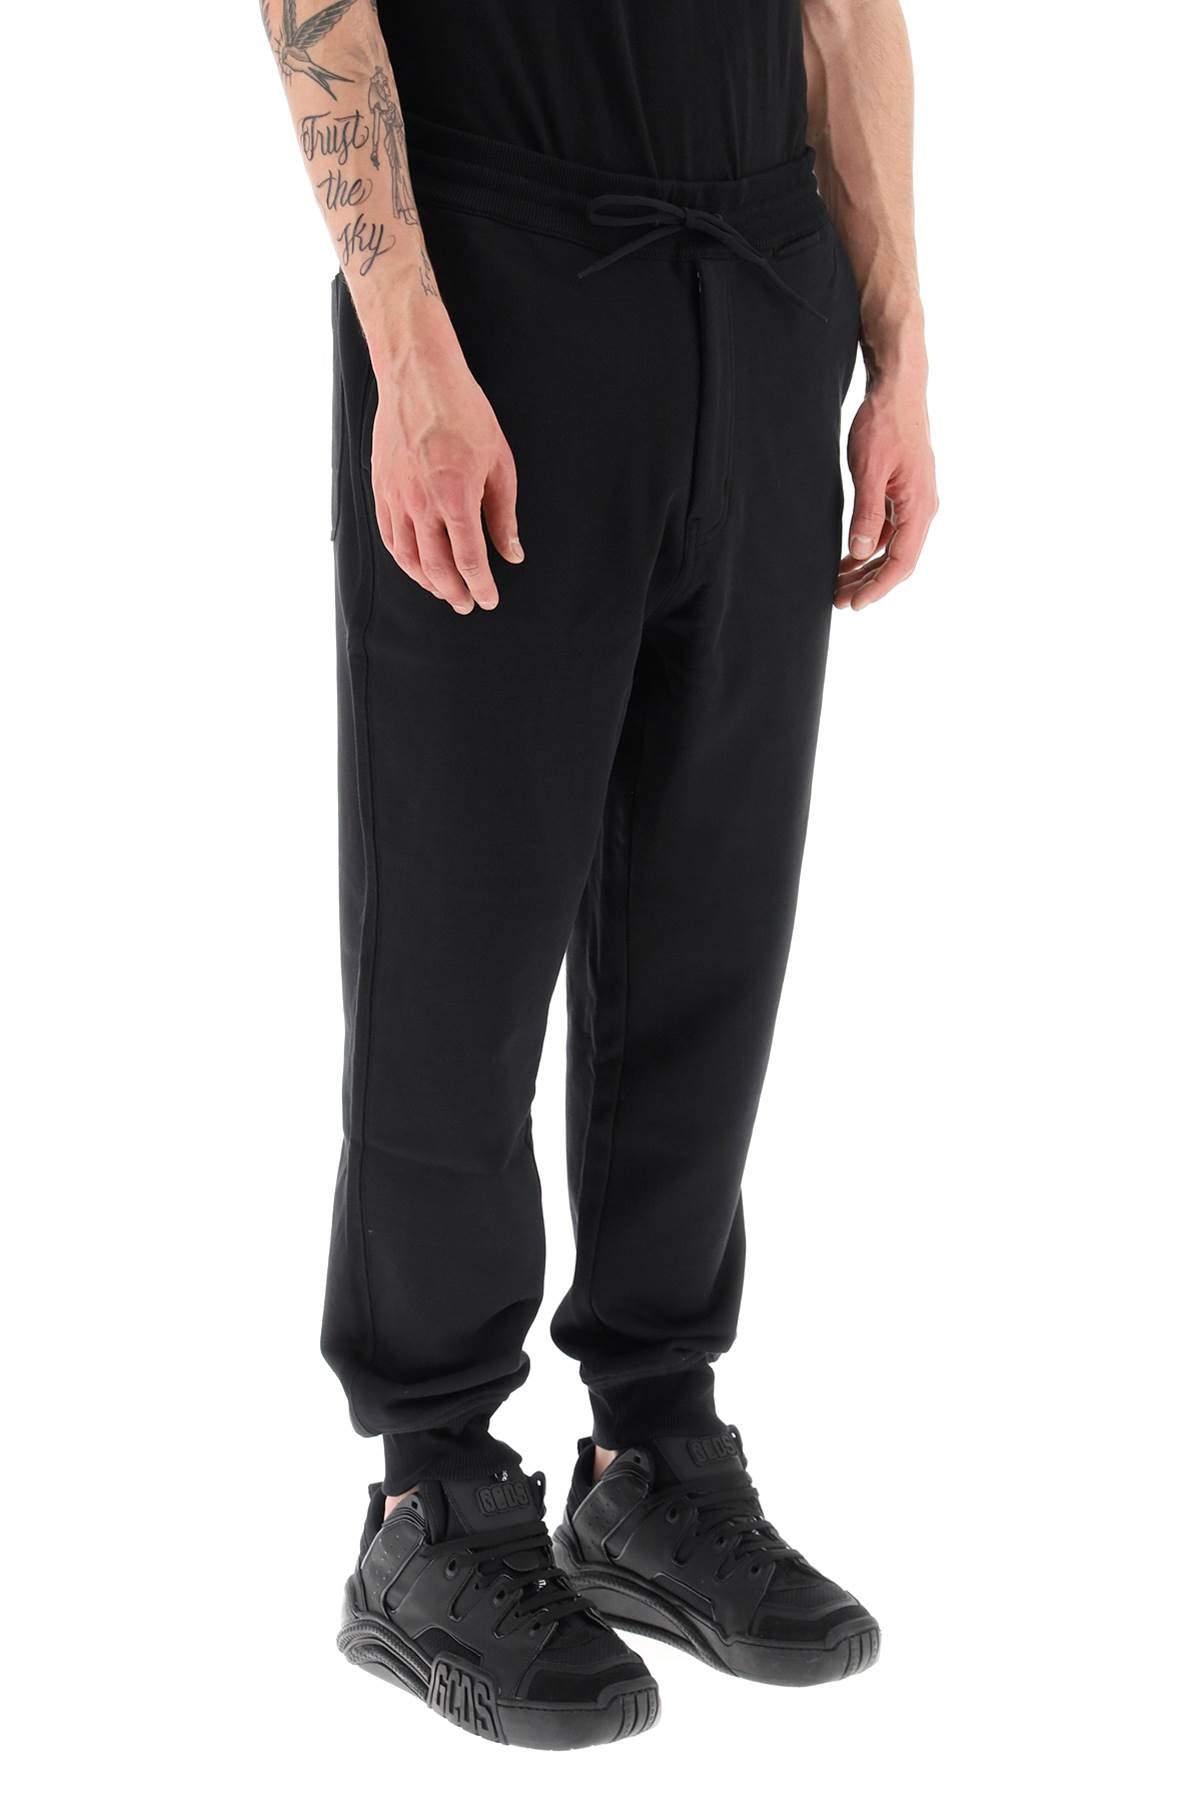 Y-3 organic cotton sweatpants-Y-3-XL-Urbanheer